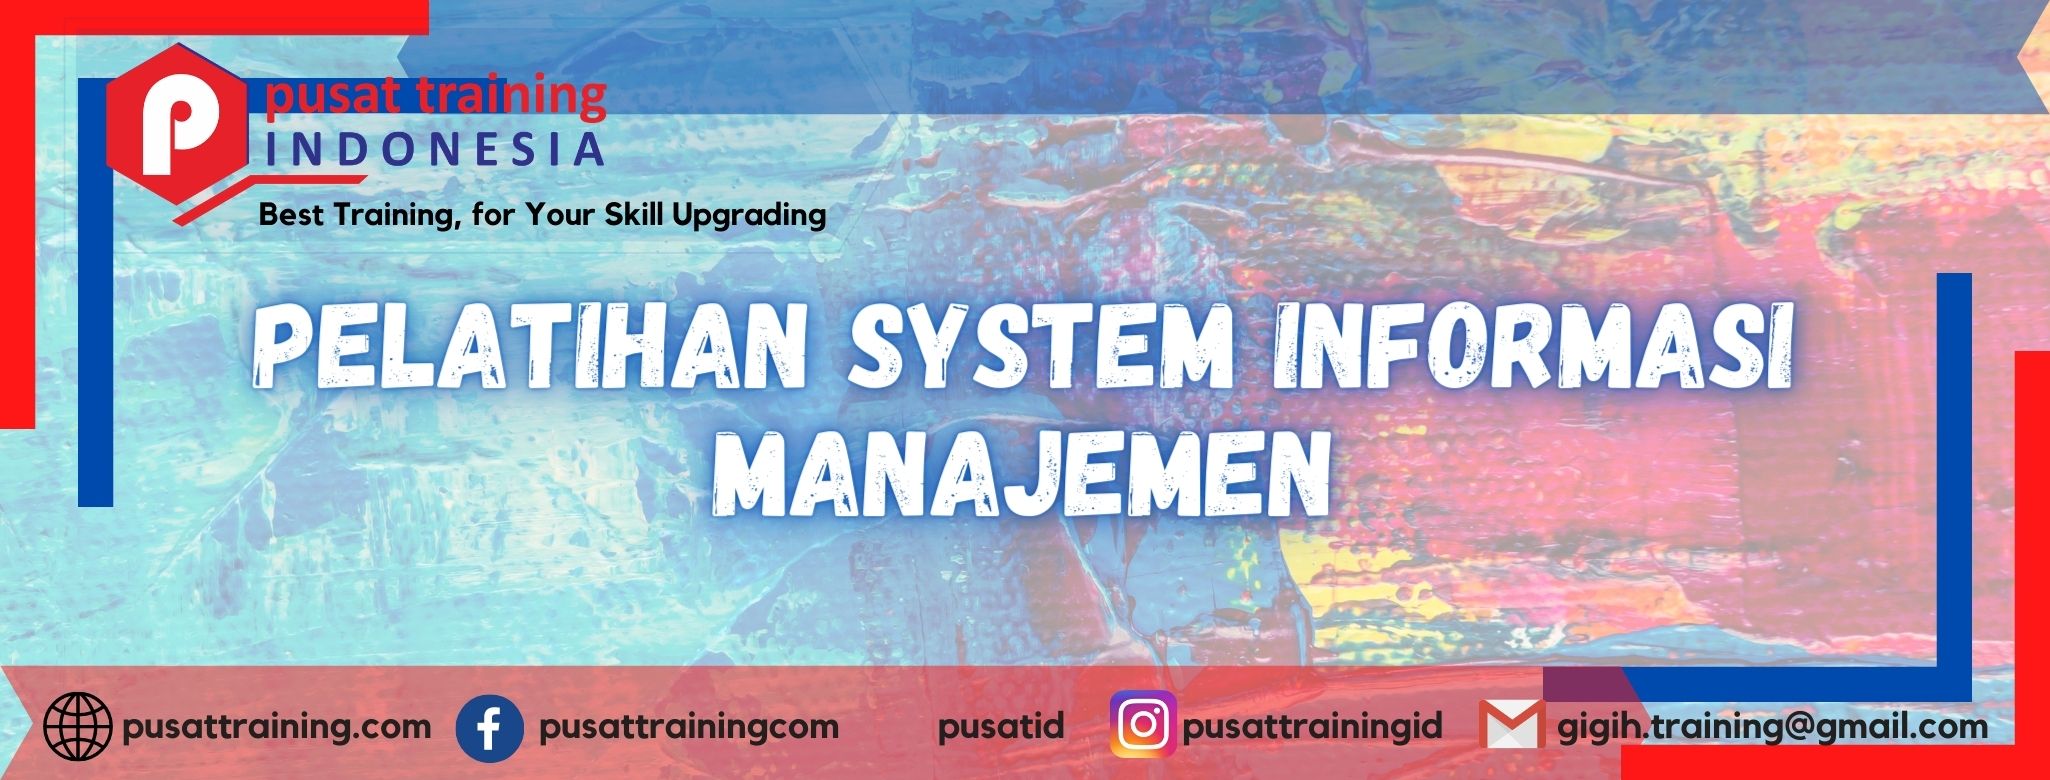 pelatihan-system-informasi-manajemen